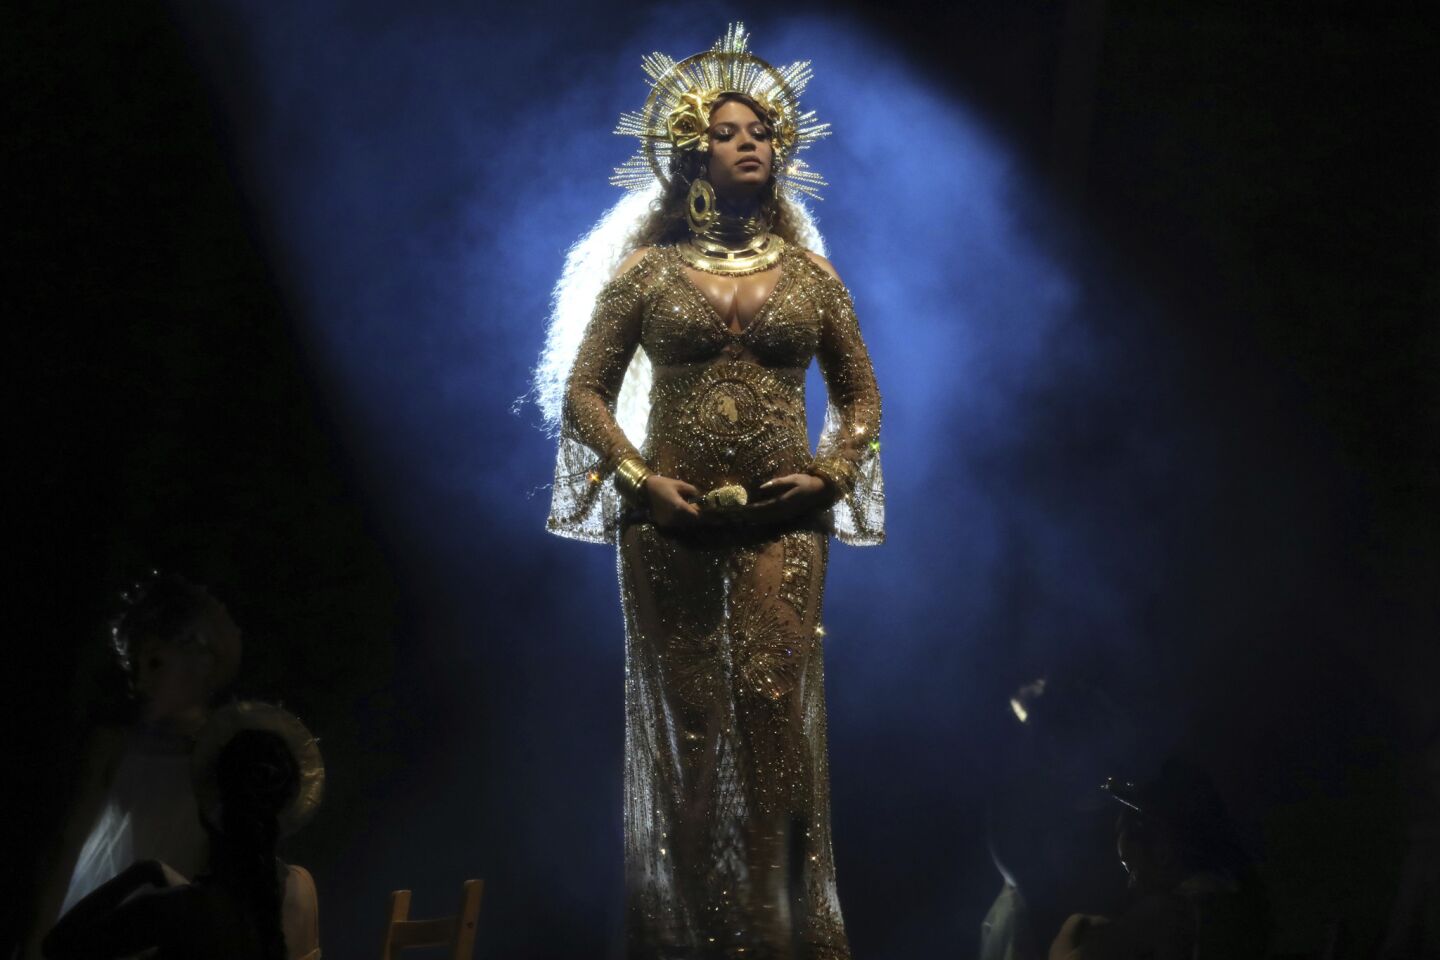 Beyoncé at the Grammys 2017